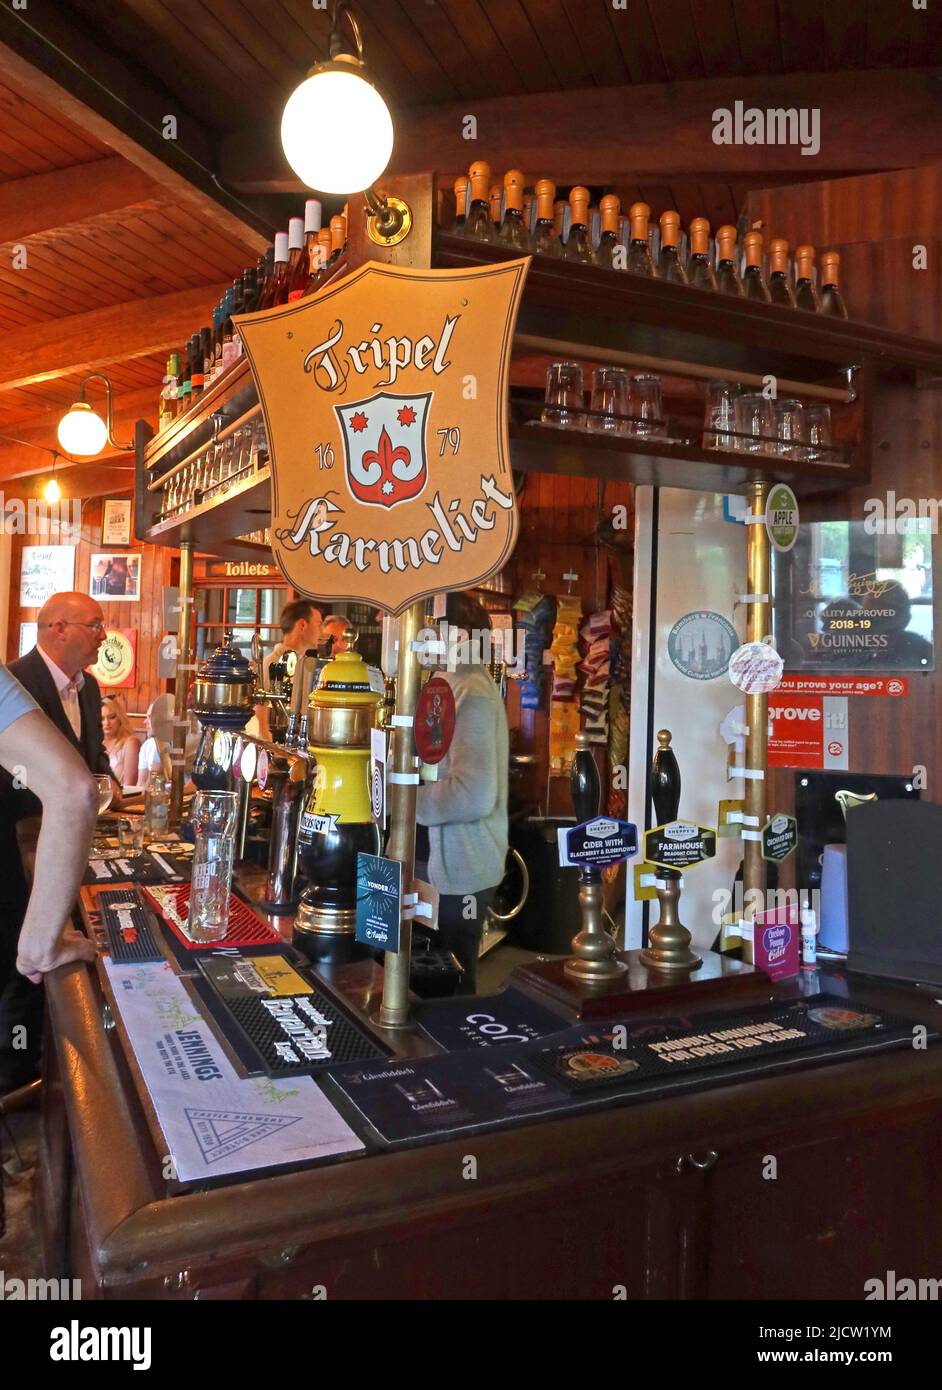 Bar presso il Liverpool Ship and Mitre Real ale Pub, area bar a tema marittimo e logo di birra belga Tripel Karmeliet, L2 Foto Stock